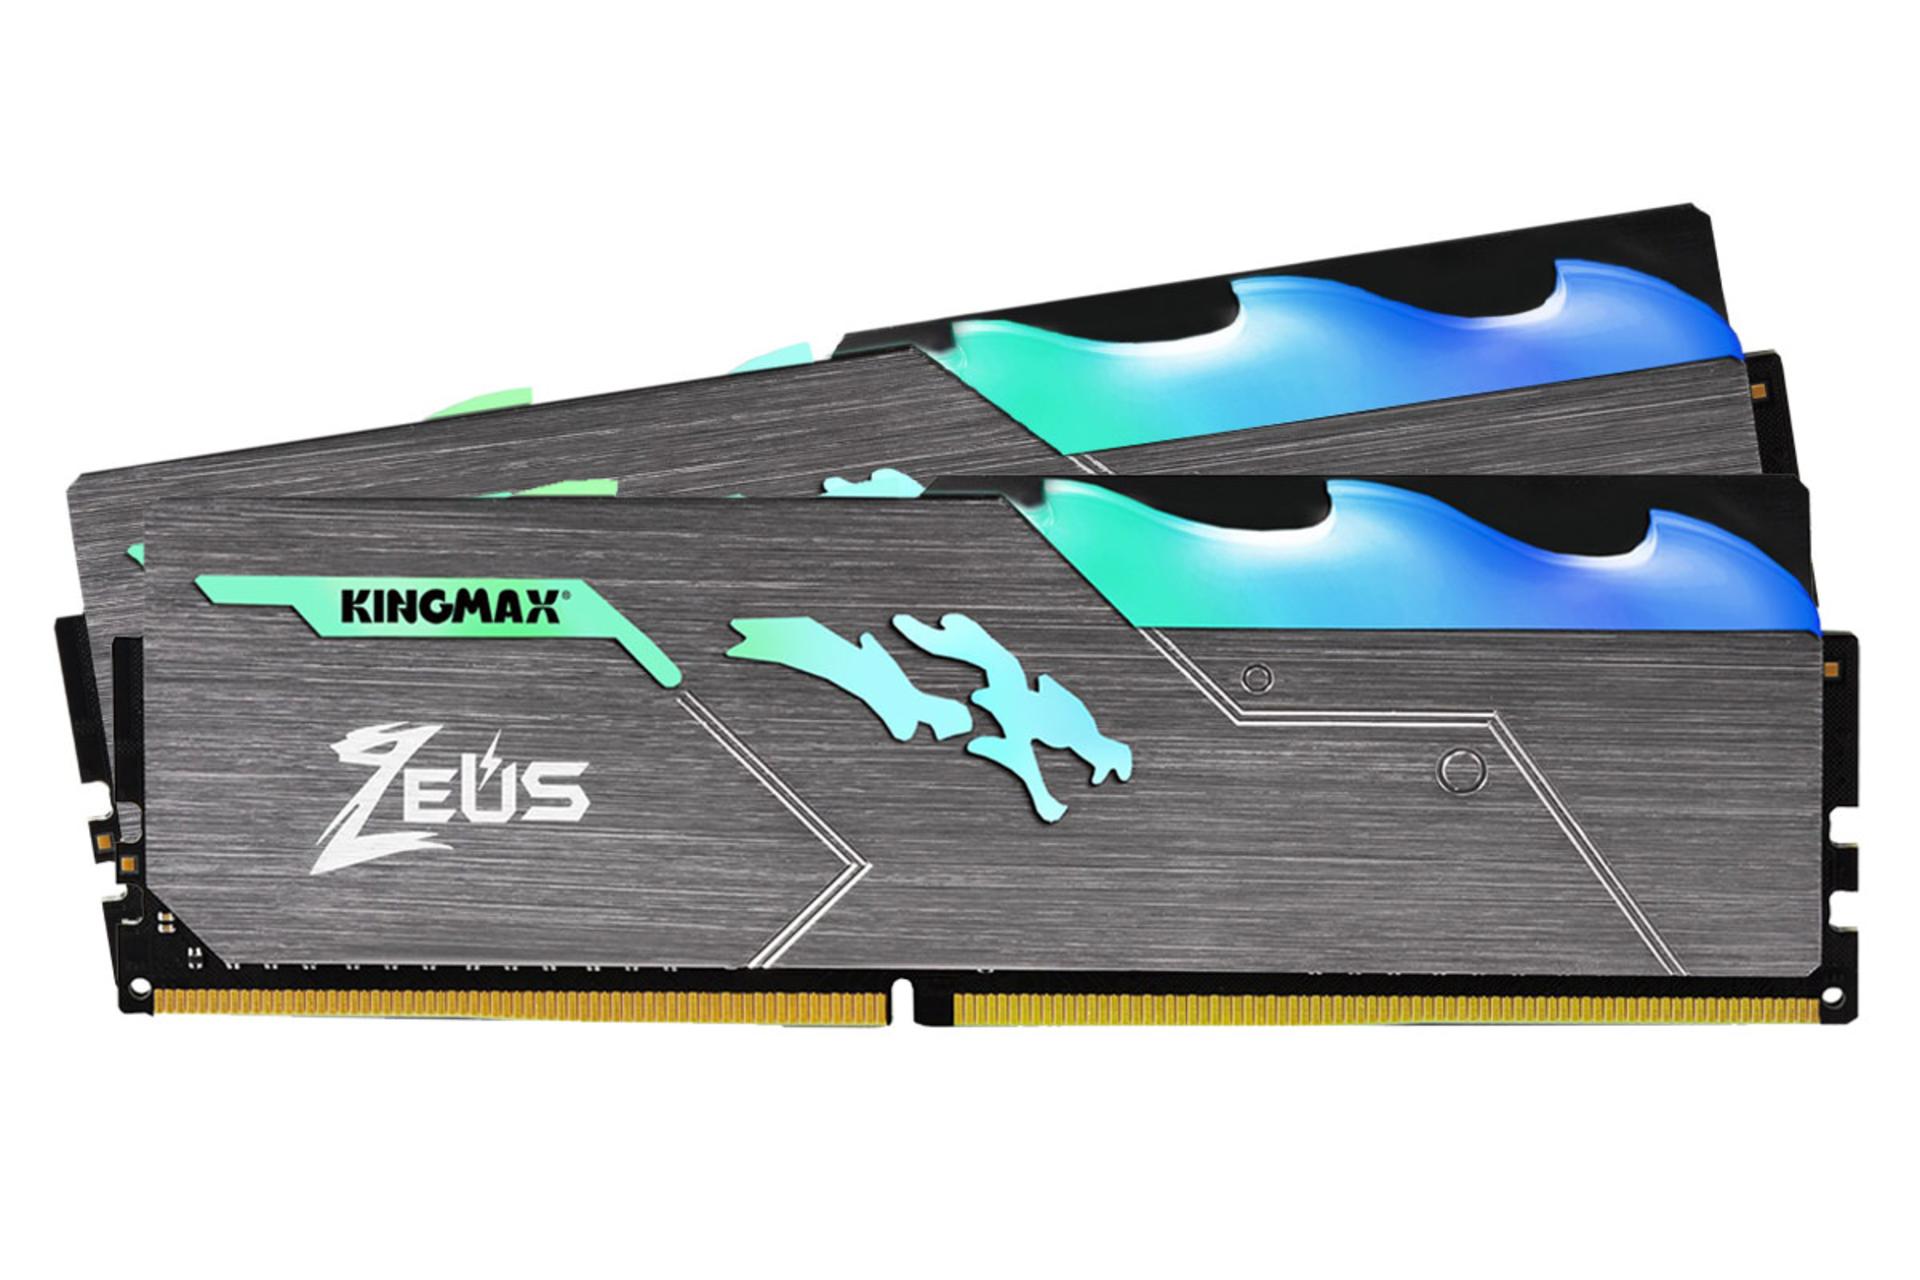 رم کینگ مکس Zeus Dragon RGB ظرفیت 32 گیگابایت (2x16) از نوع DDR4-3200